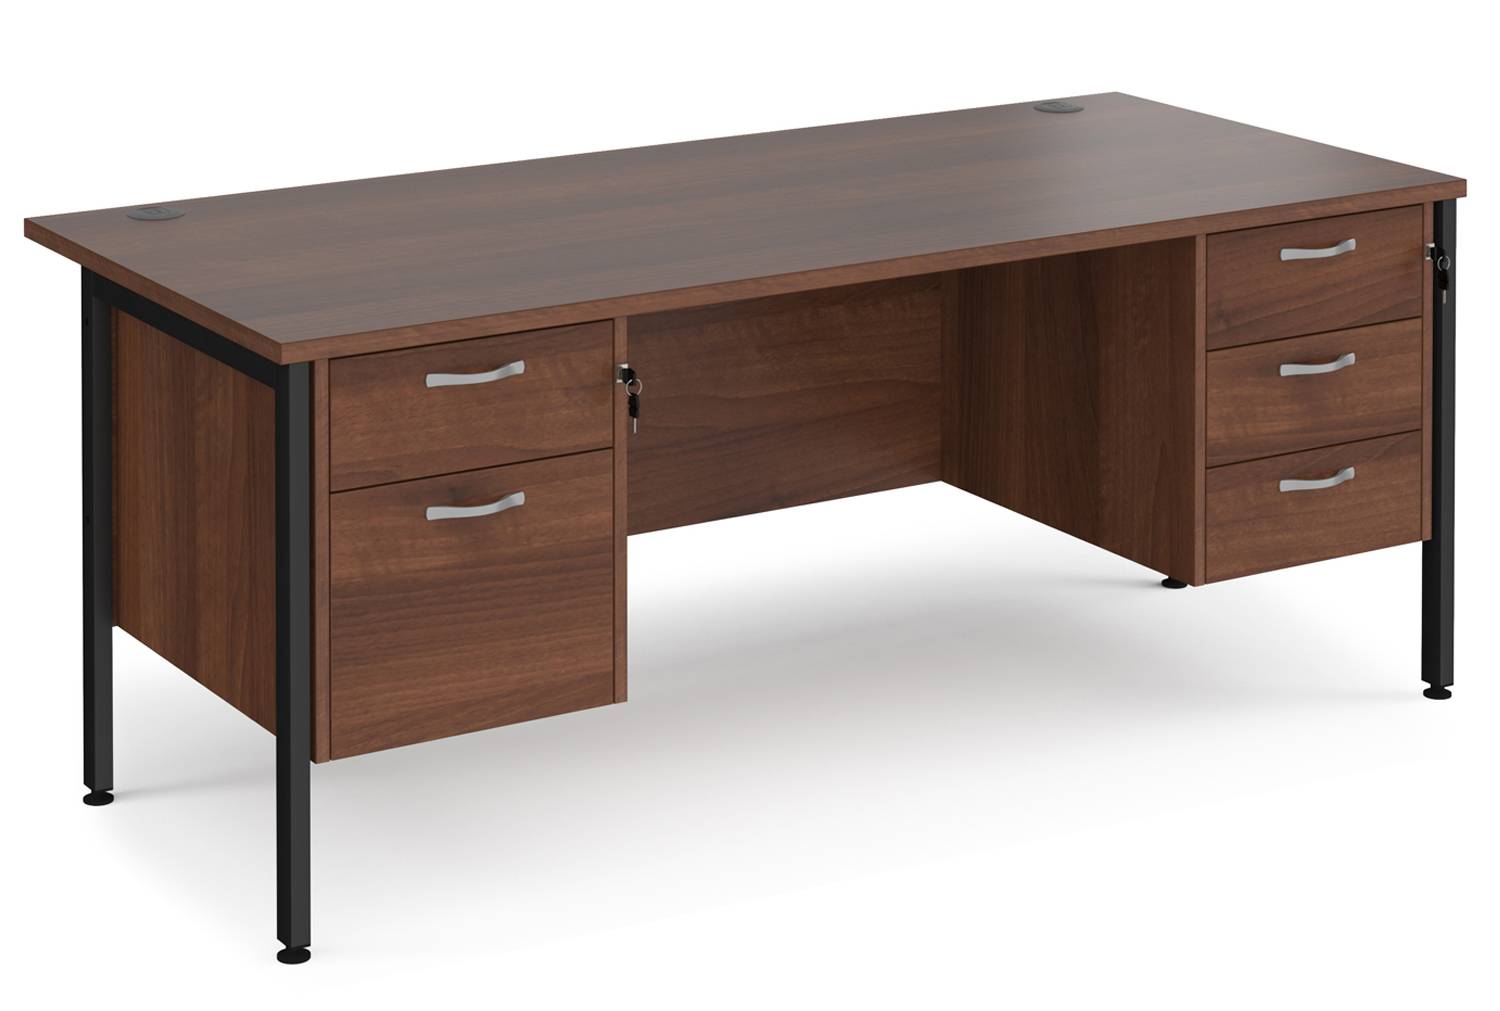 Value Line Deluxe H-Leg Rectangular Office Desk 2+3 Drawers (Black Legs), 180wx80dx73h (cm), Walnut